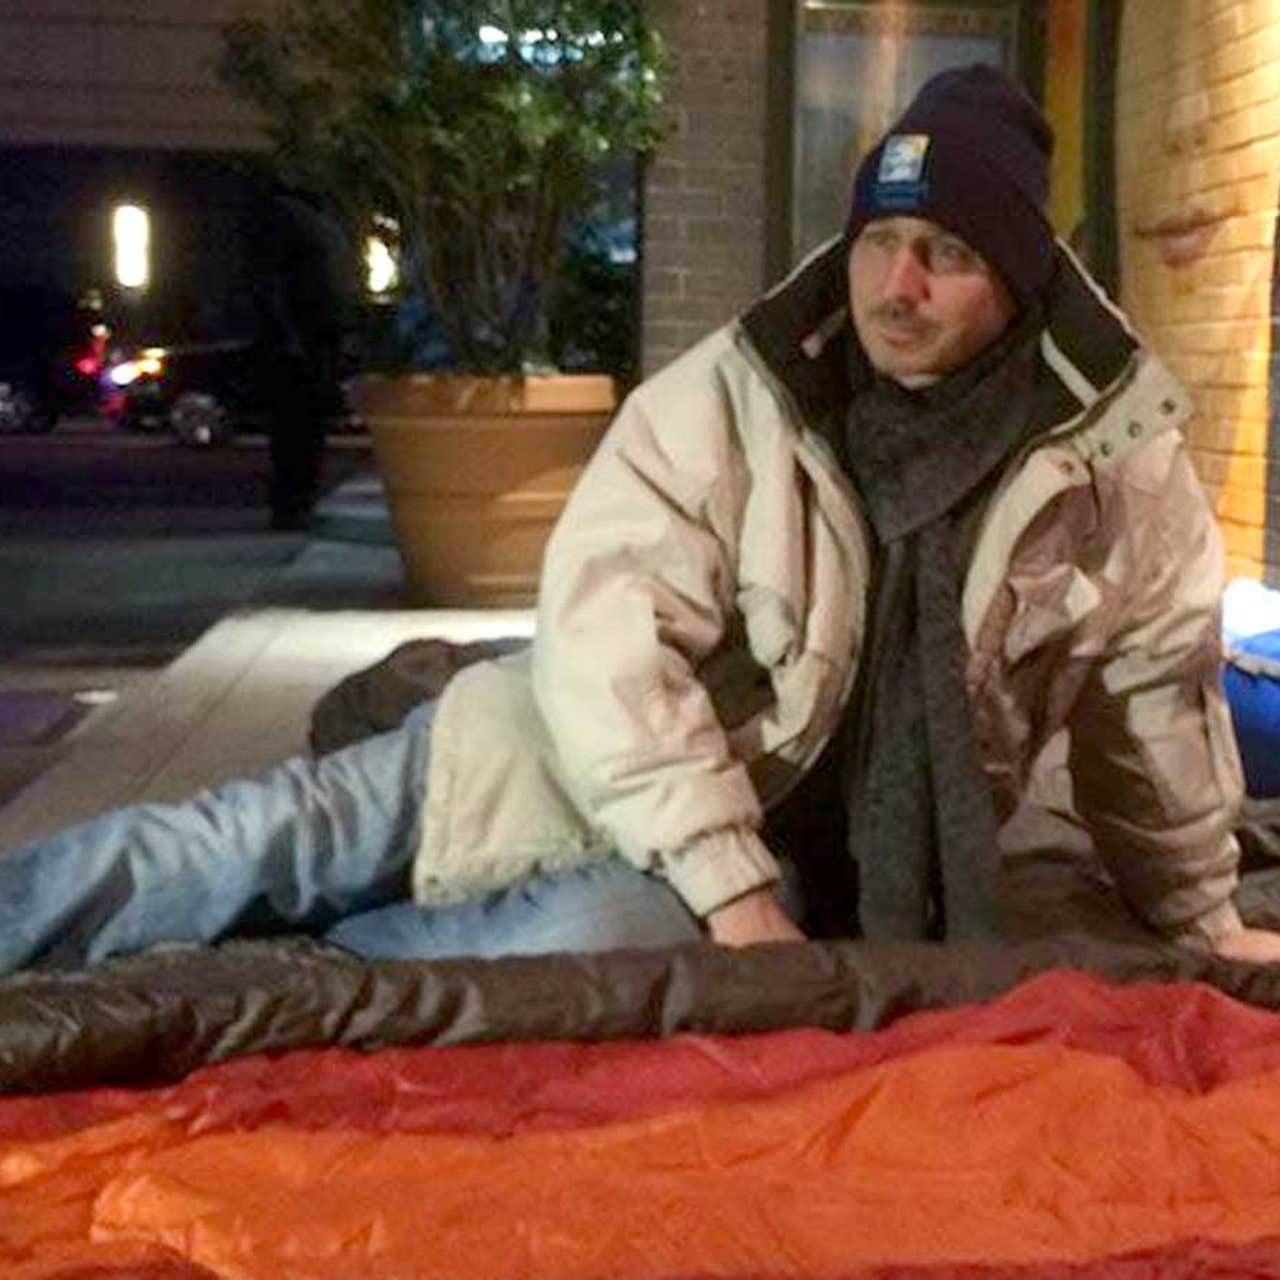 Sleeping bag coats help keep Winnipeg's homeless warm